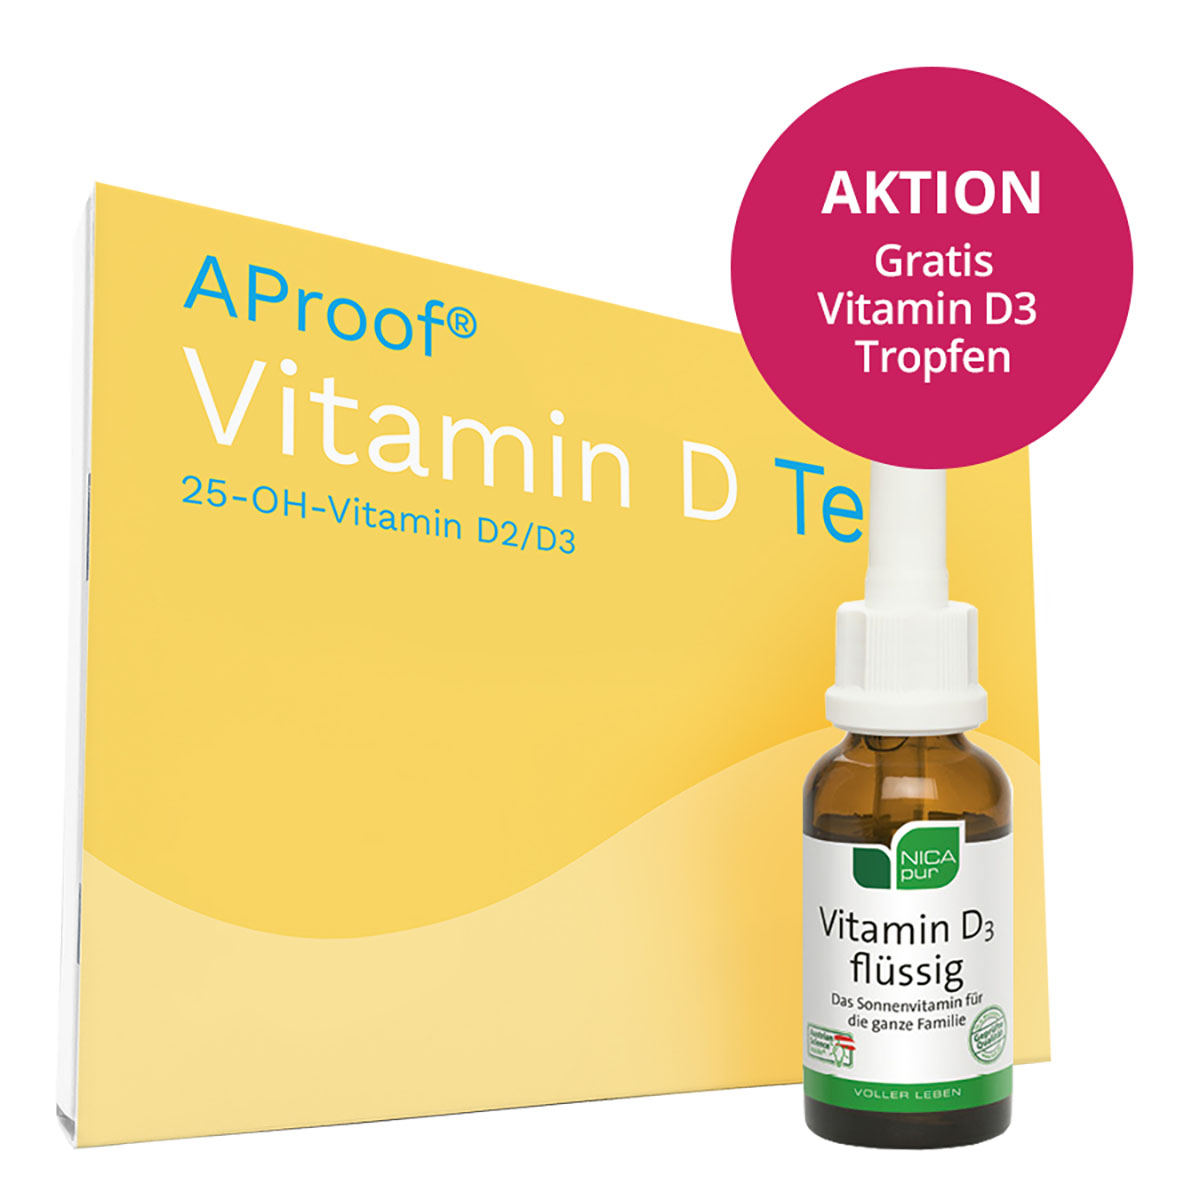 AProof® Vitamin D Test - jetzt Vitamin D Spiegel messen